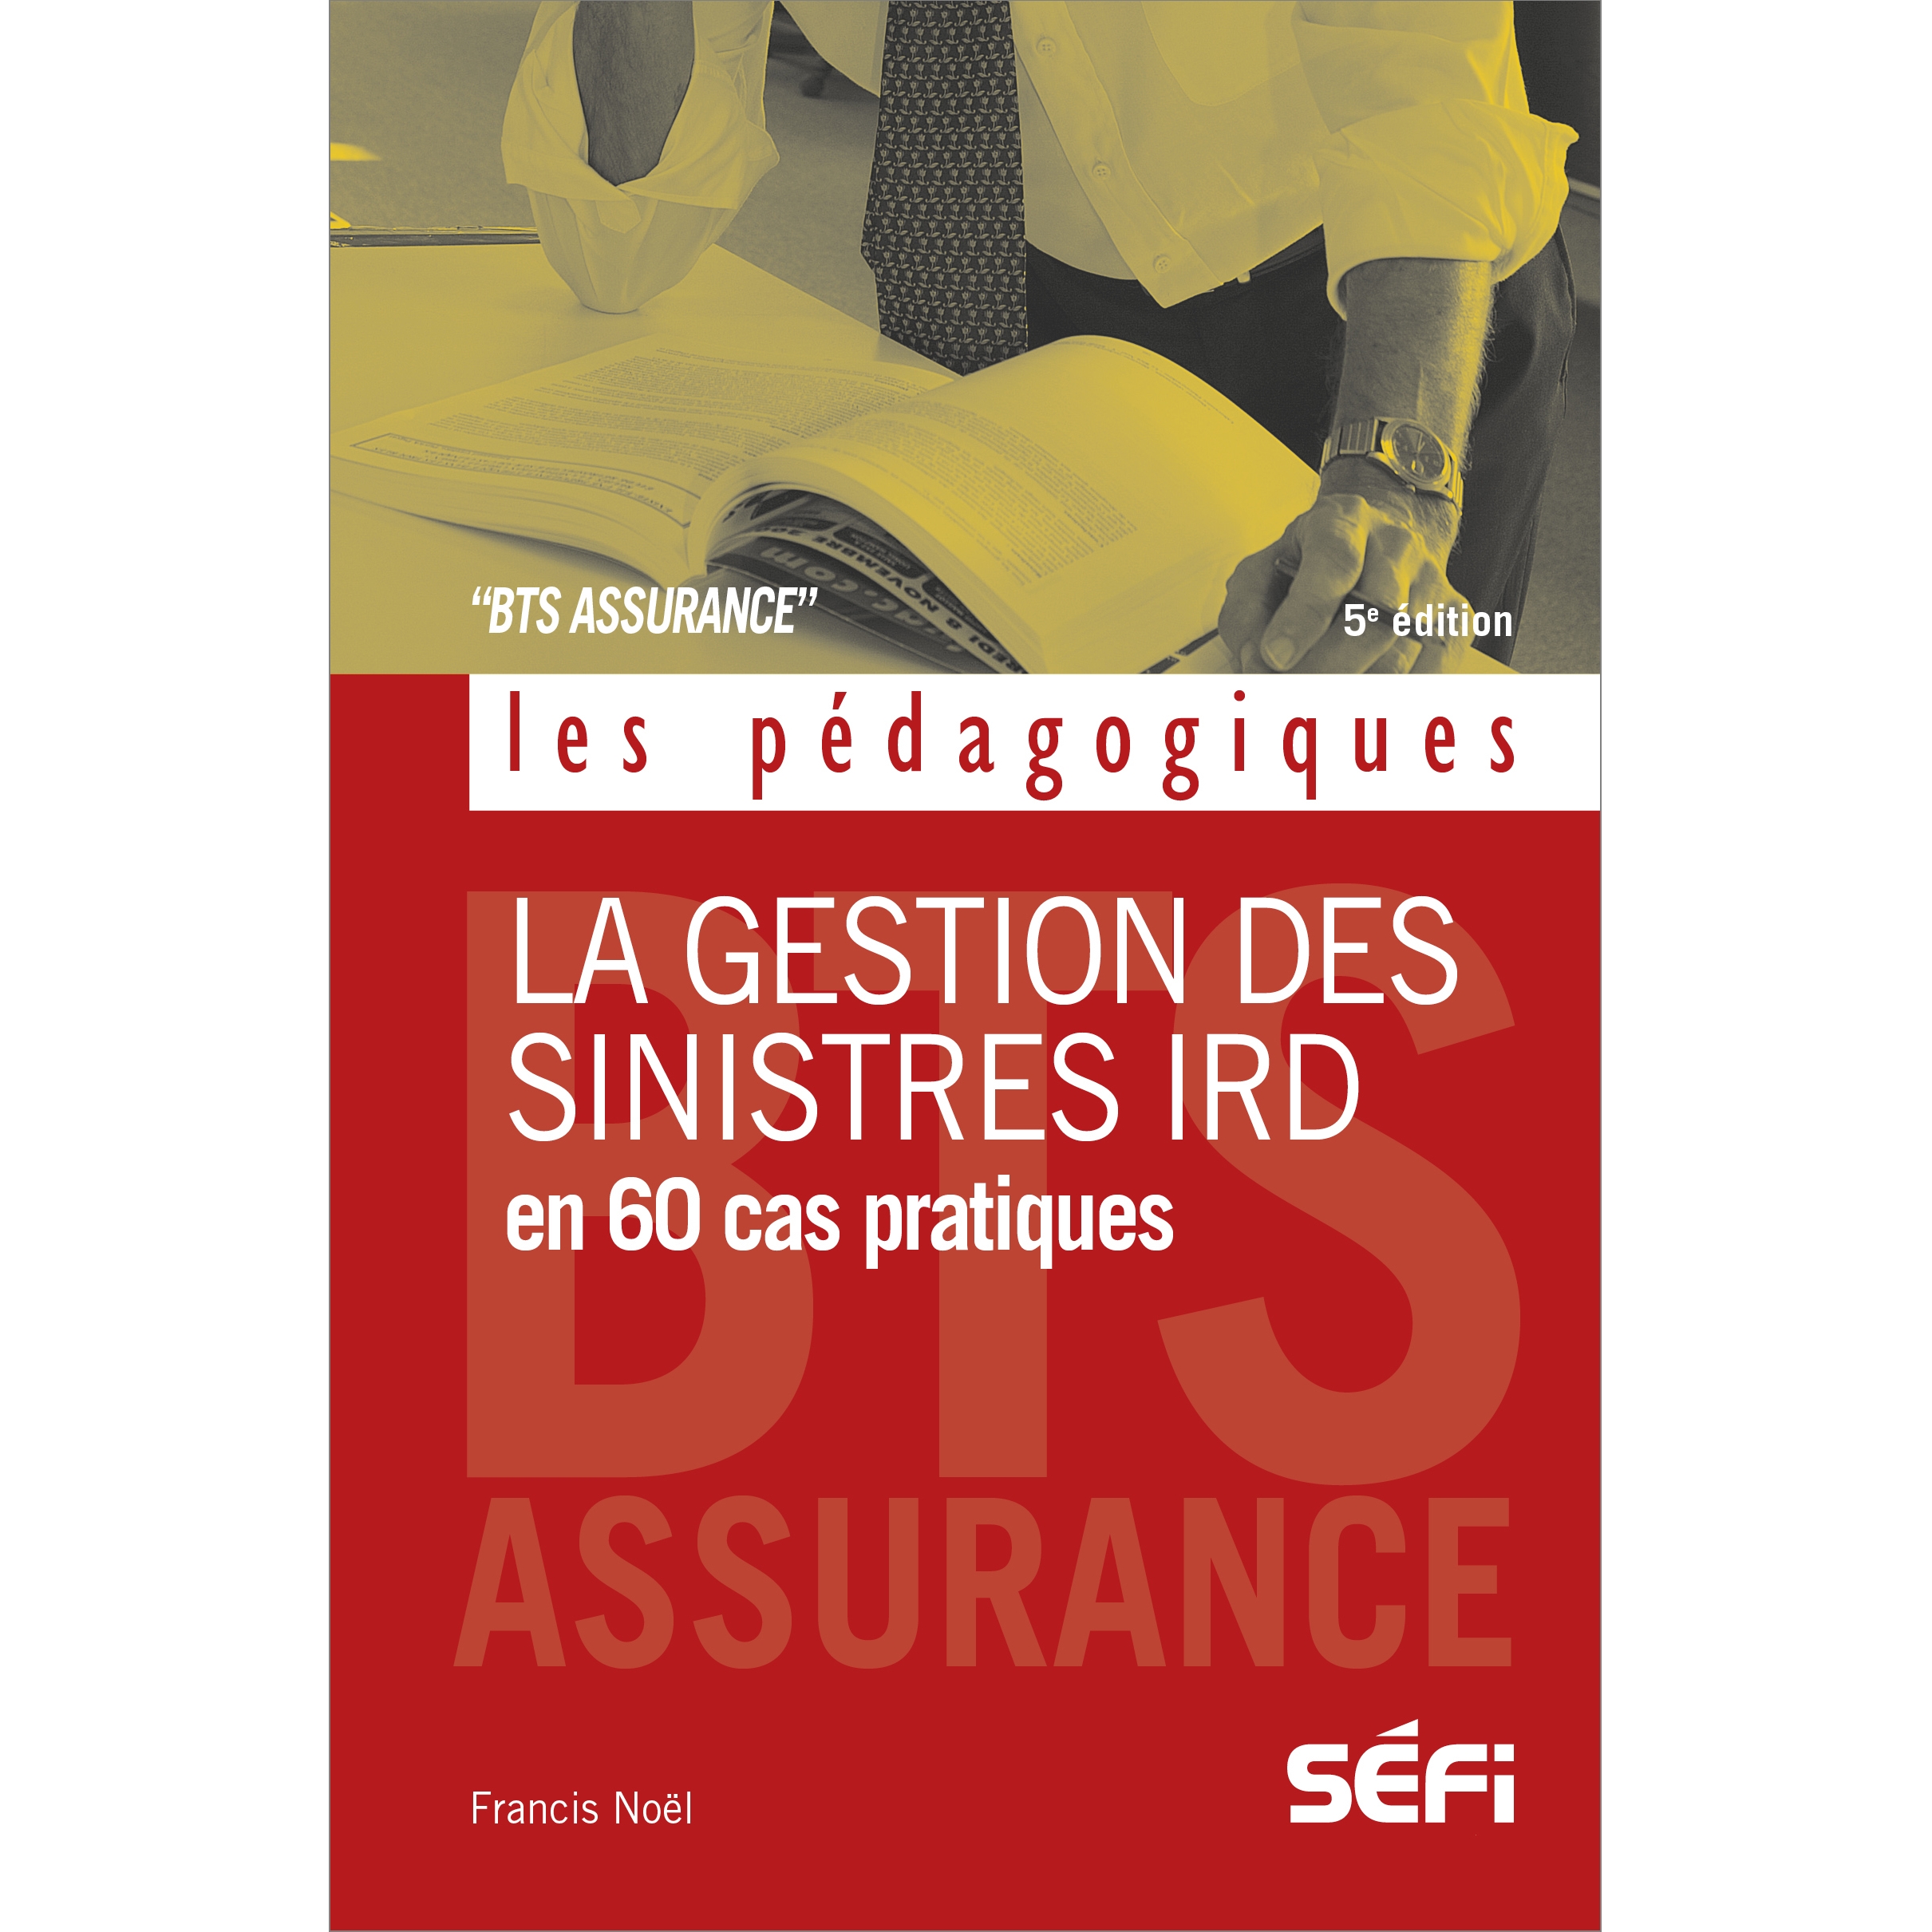 La gestion des sinistres IRD en 60 cas pratiques - 5e édition